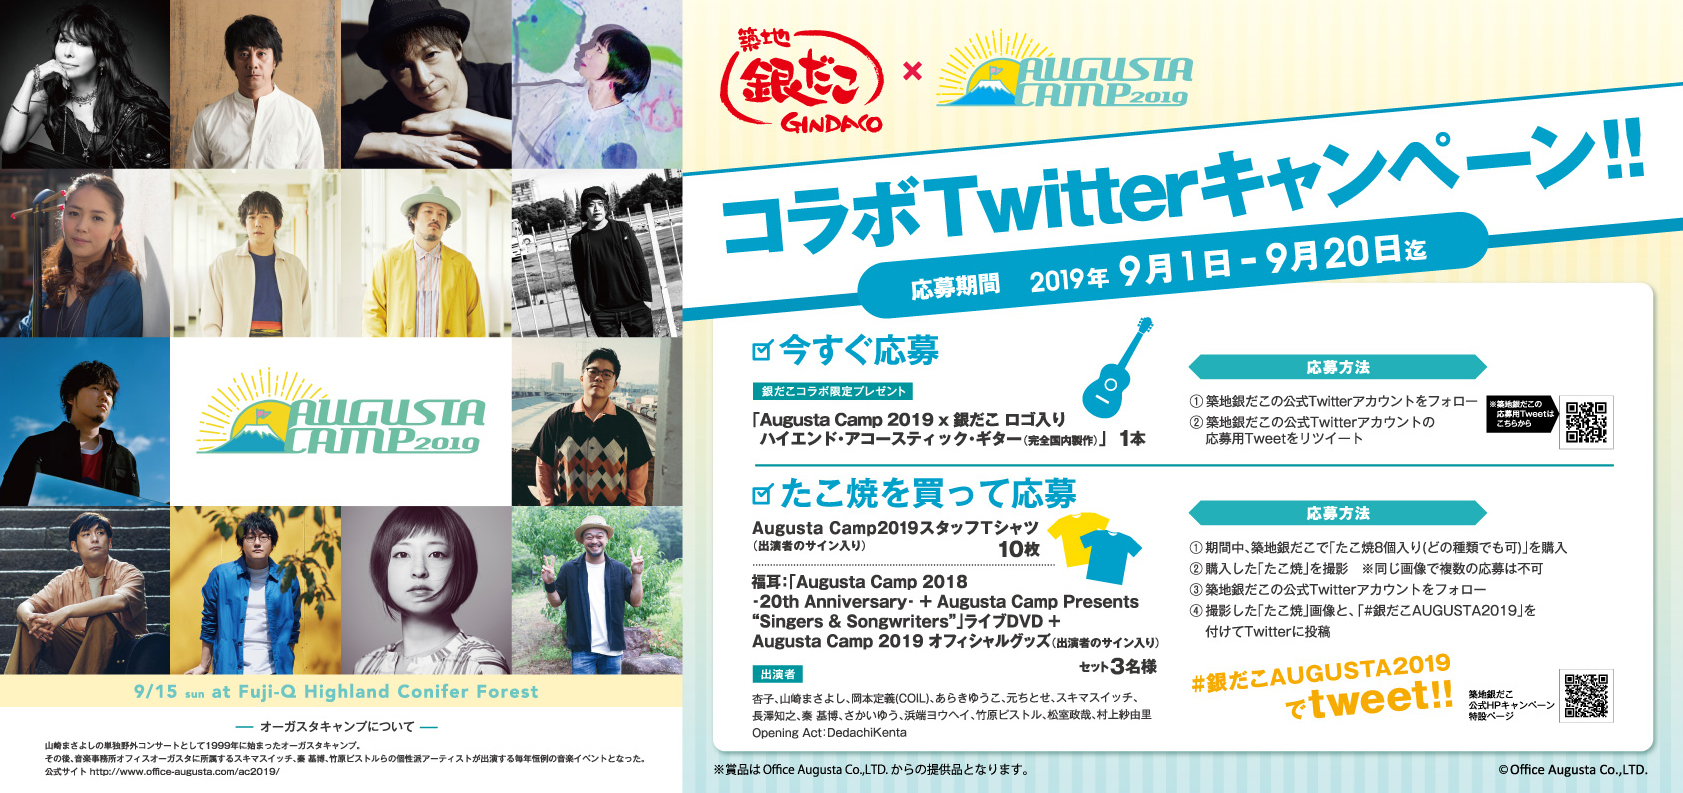 Tsukiji Gin Dako x Augusta Camp 2019 Collaboration Twitter Campaign